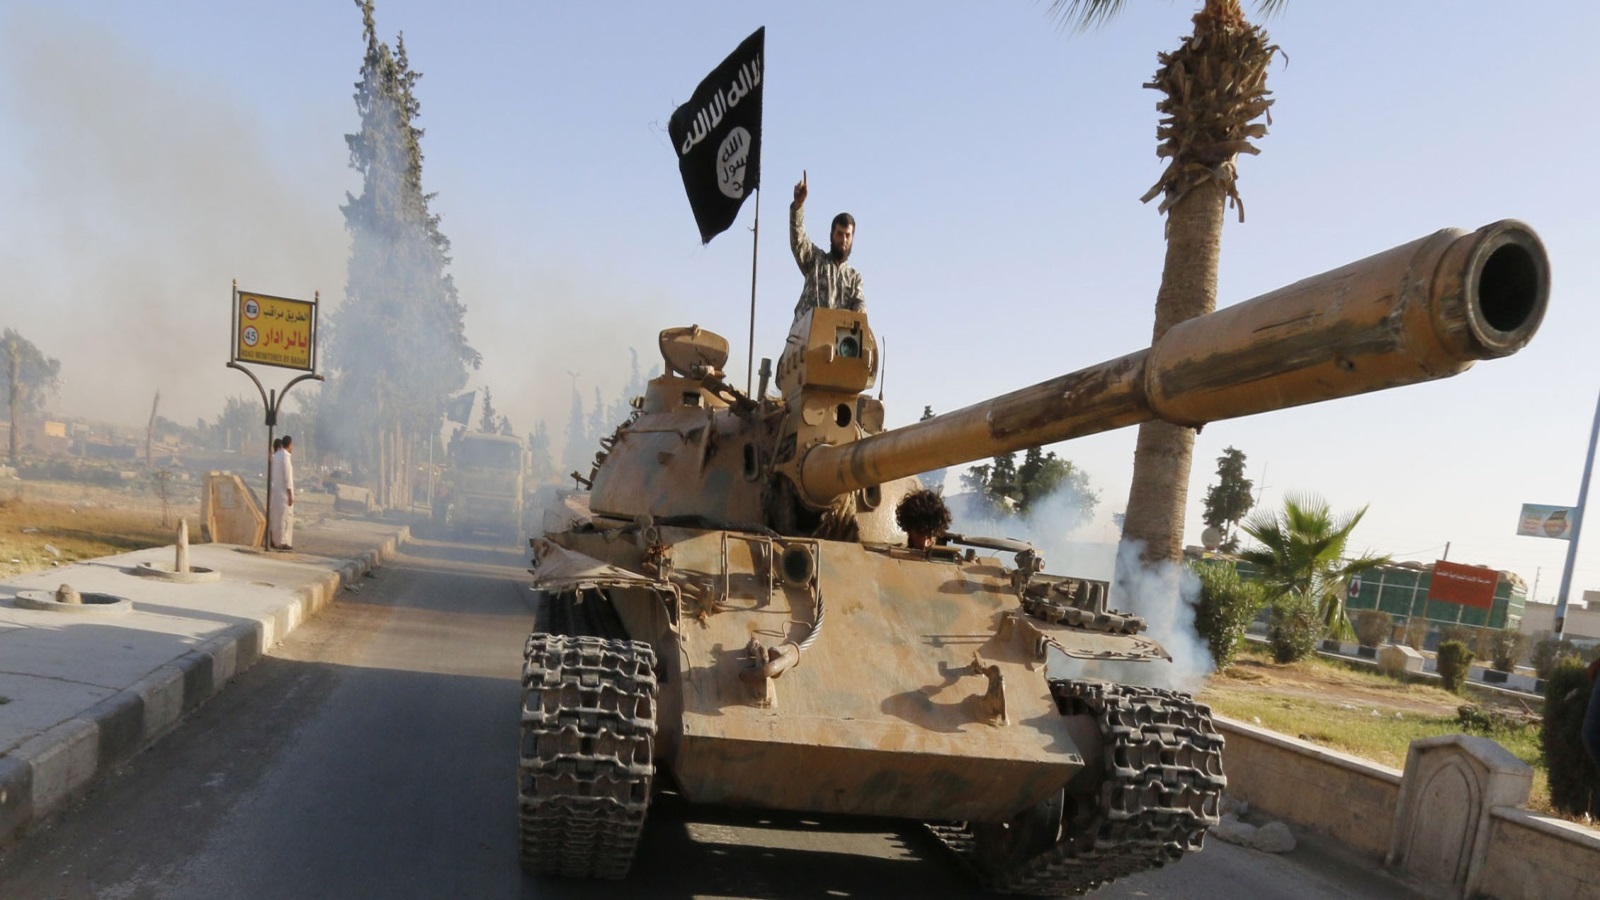 تنظيم الدولة سيطر على مساحات شاسعة من العراق في الفترة من 2014 إلى نهاية 2017 (رويترز)